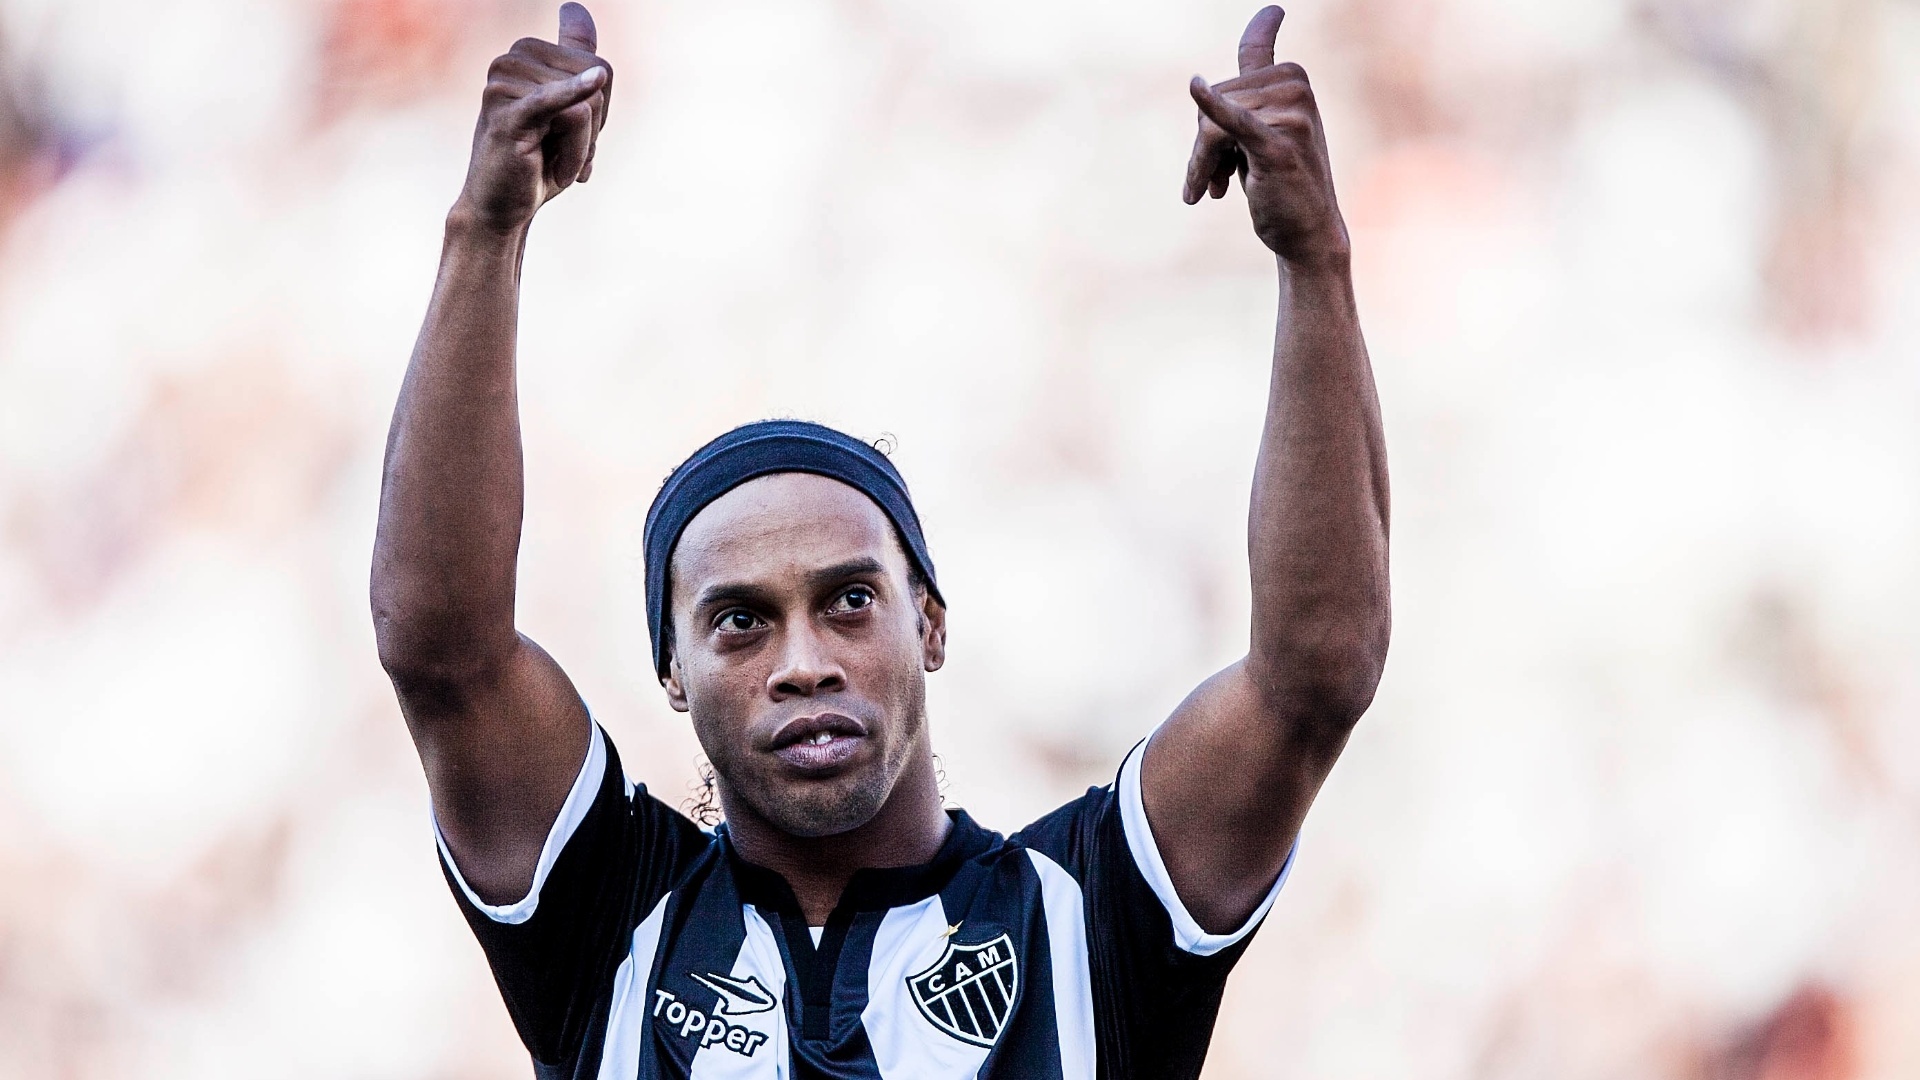 Descarga gratuita de fondo de pantalla para móvil de Fútbol, Ronaldinho, Deporte, Club Atlético Mineiro.